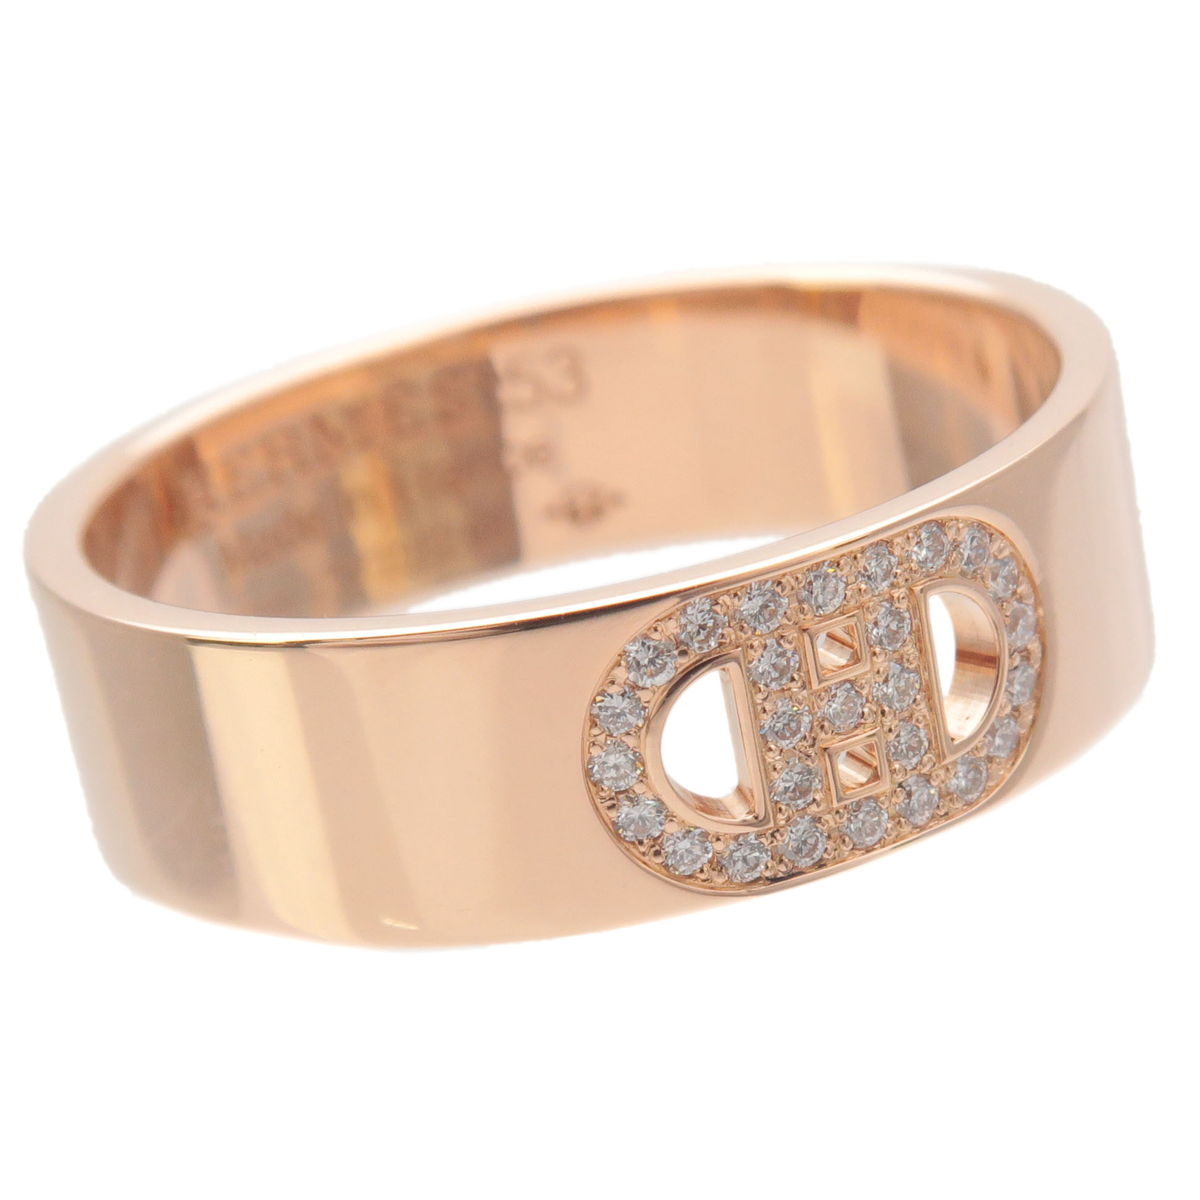 HERMES H Dunkle Diamond Ring K18PG Rose Gold #53 US6.5 EU53